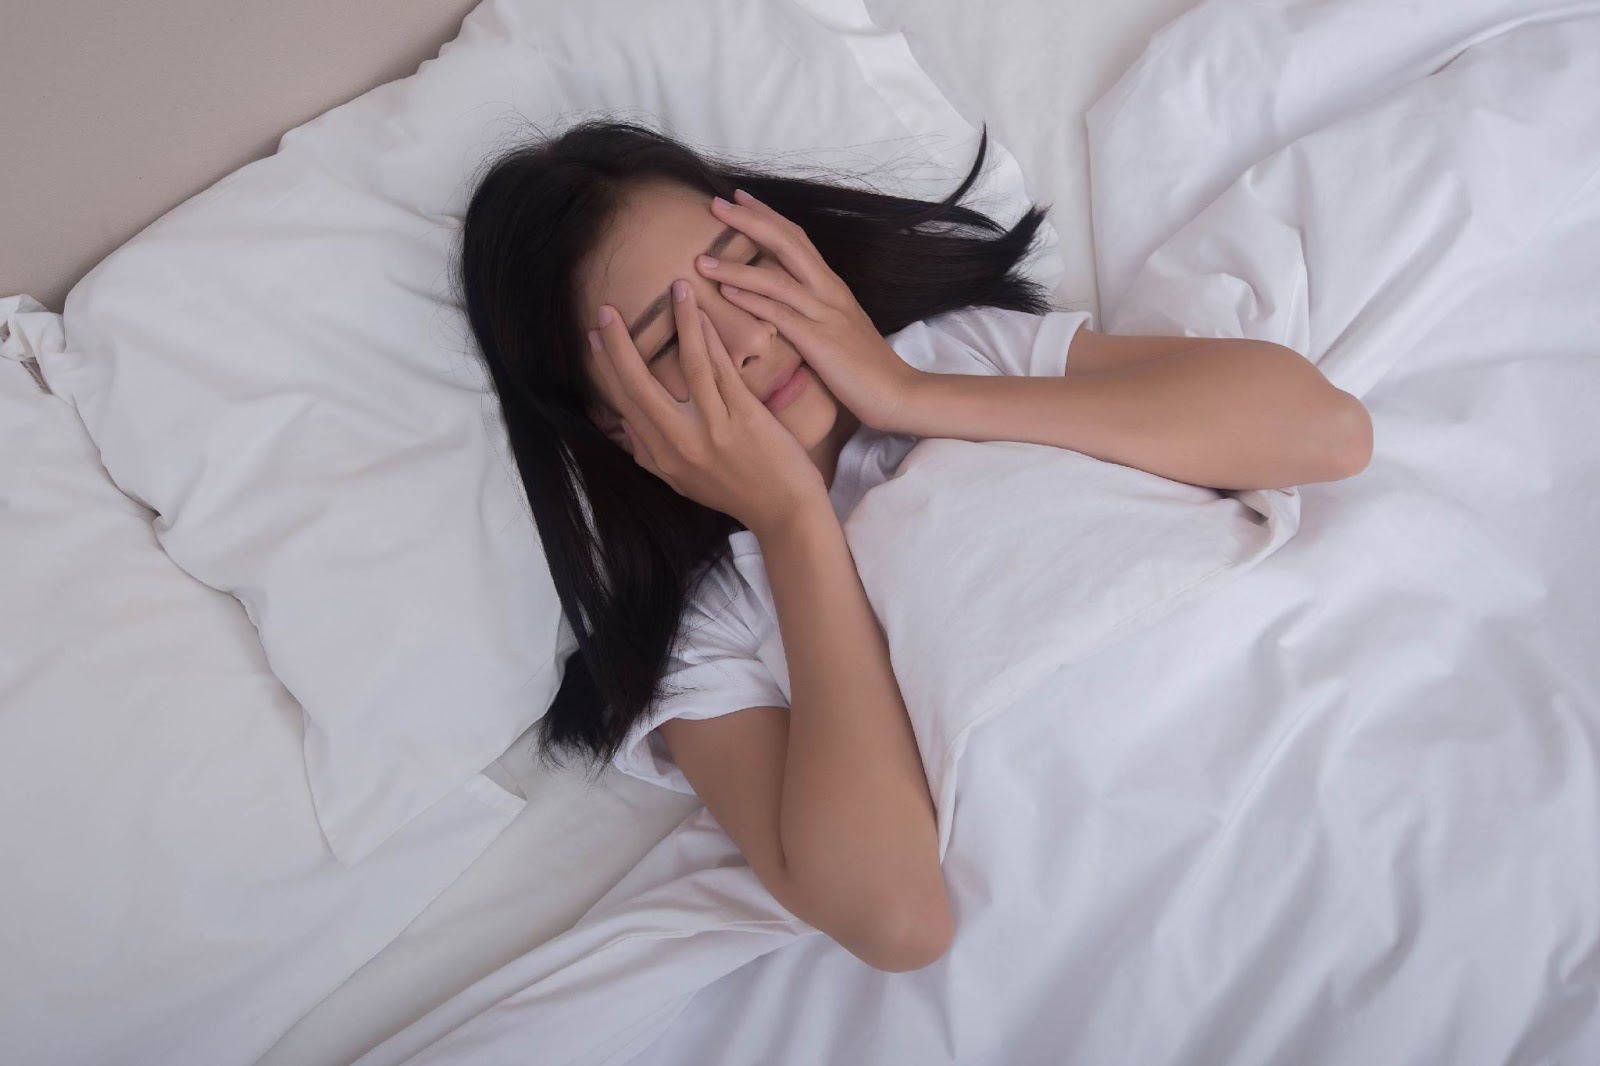 การนอนเท่าไหร่ก็ไม่พอ สัญญาณของโรคร้าย